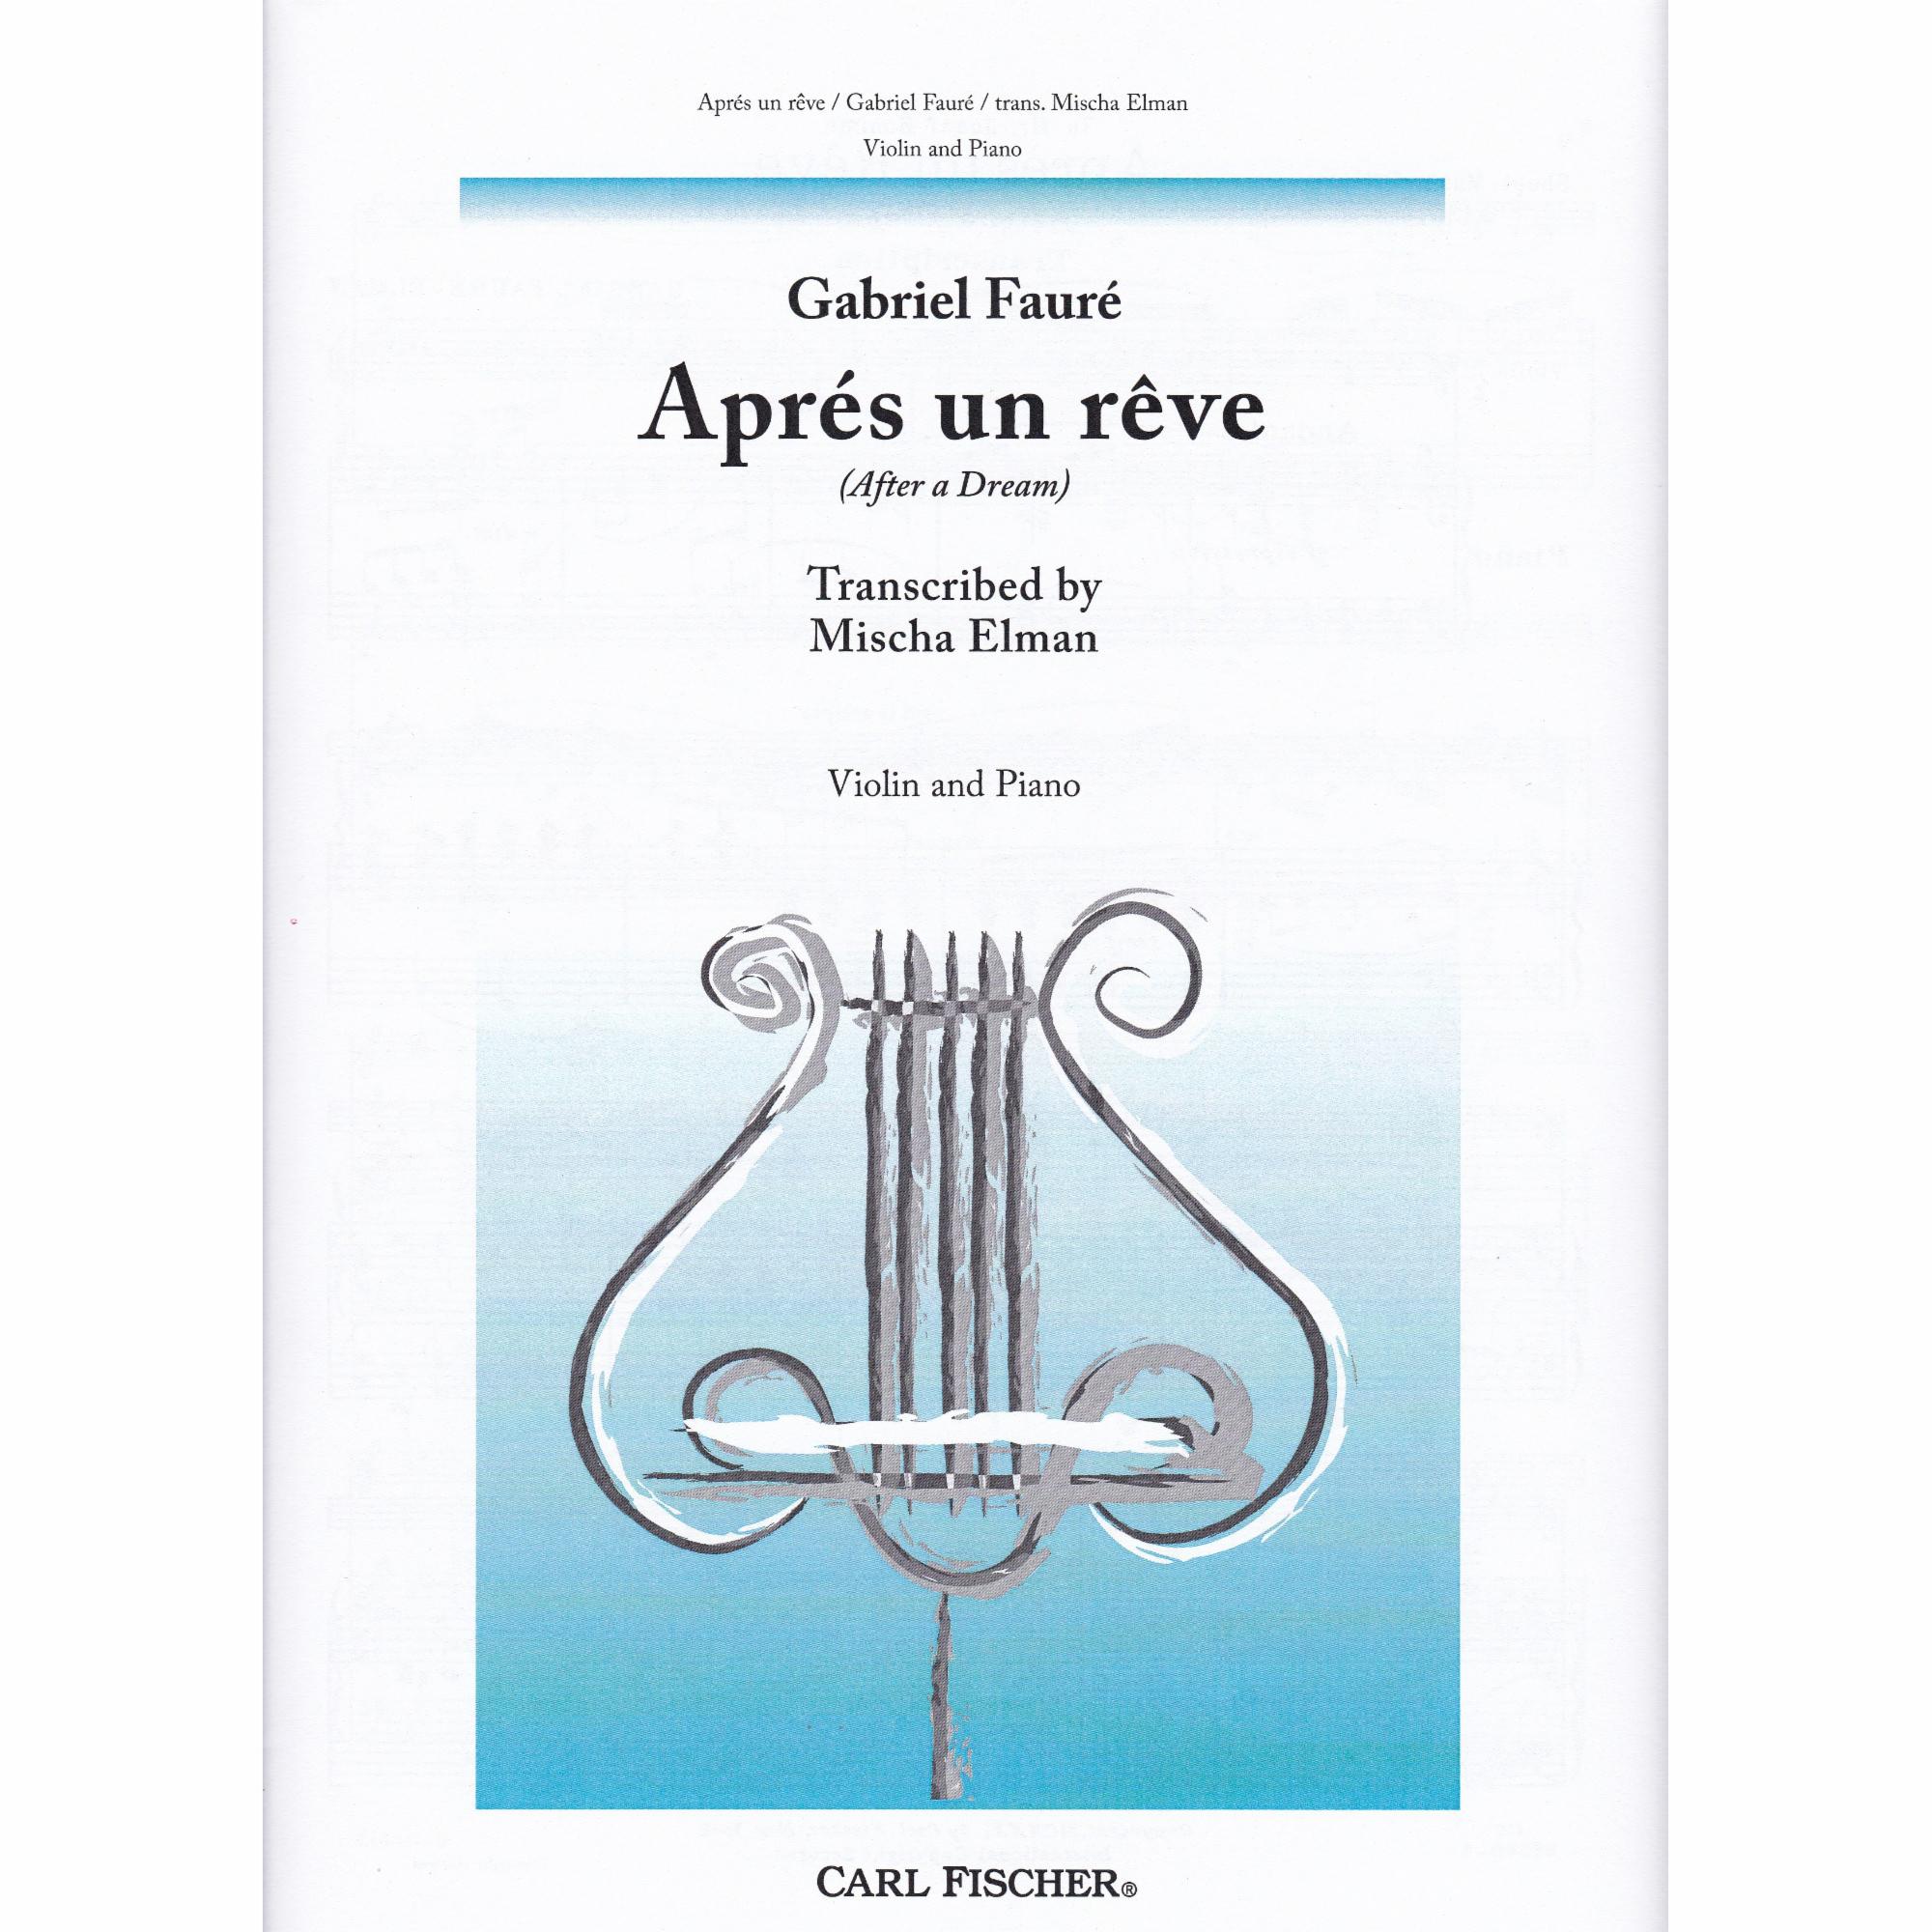 Apres un reve for Violin and Piano